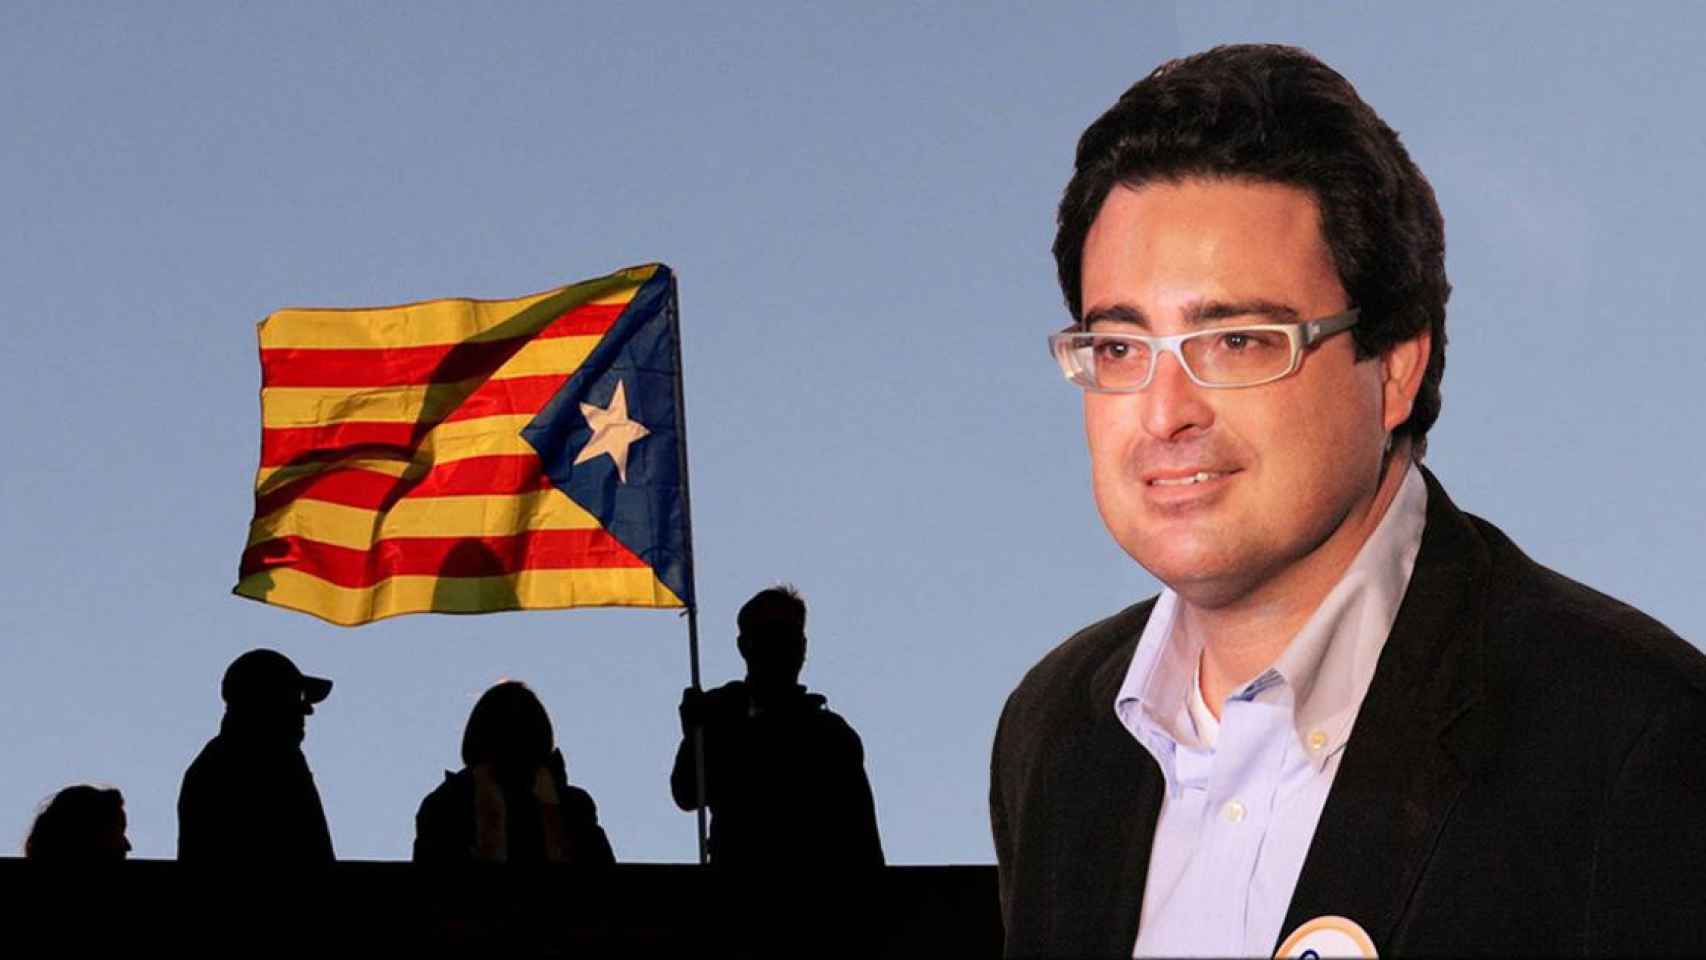 Fotomontaje del exconvergente David Madí, investigado por el 'caso Voloh', junto a una bandera independentista / CG vía EFE